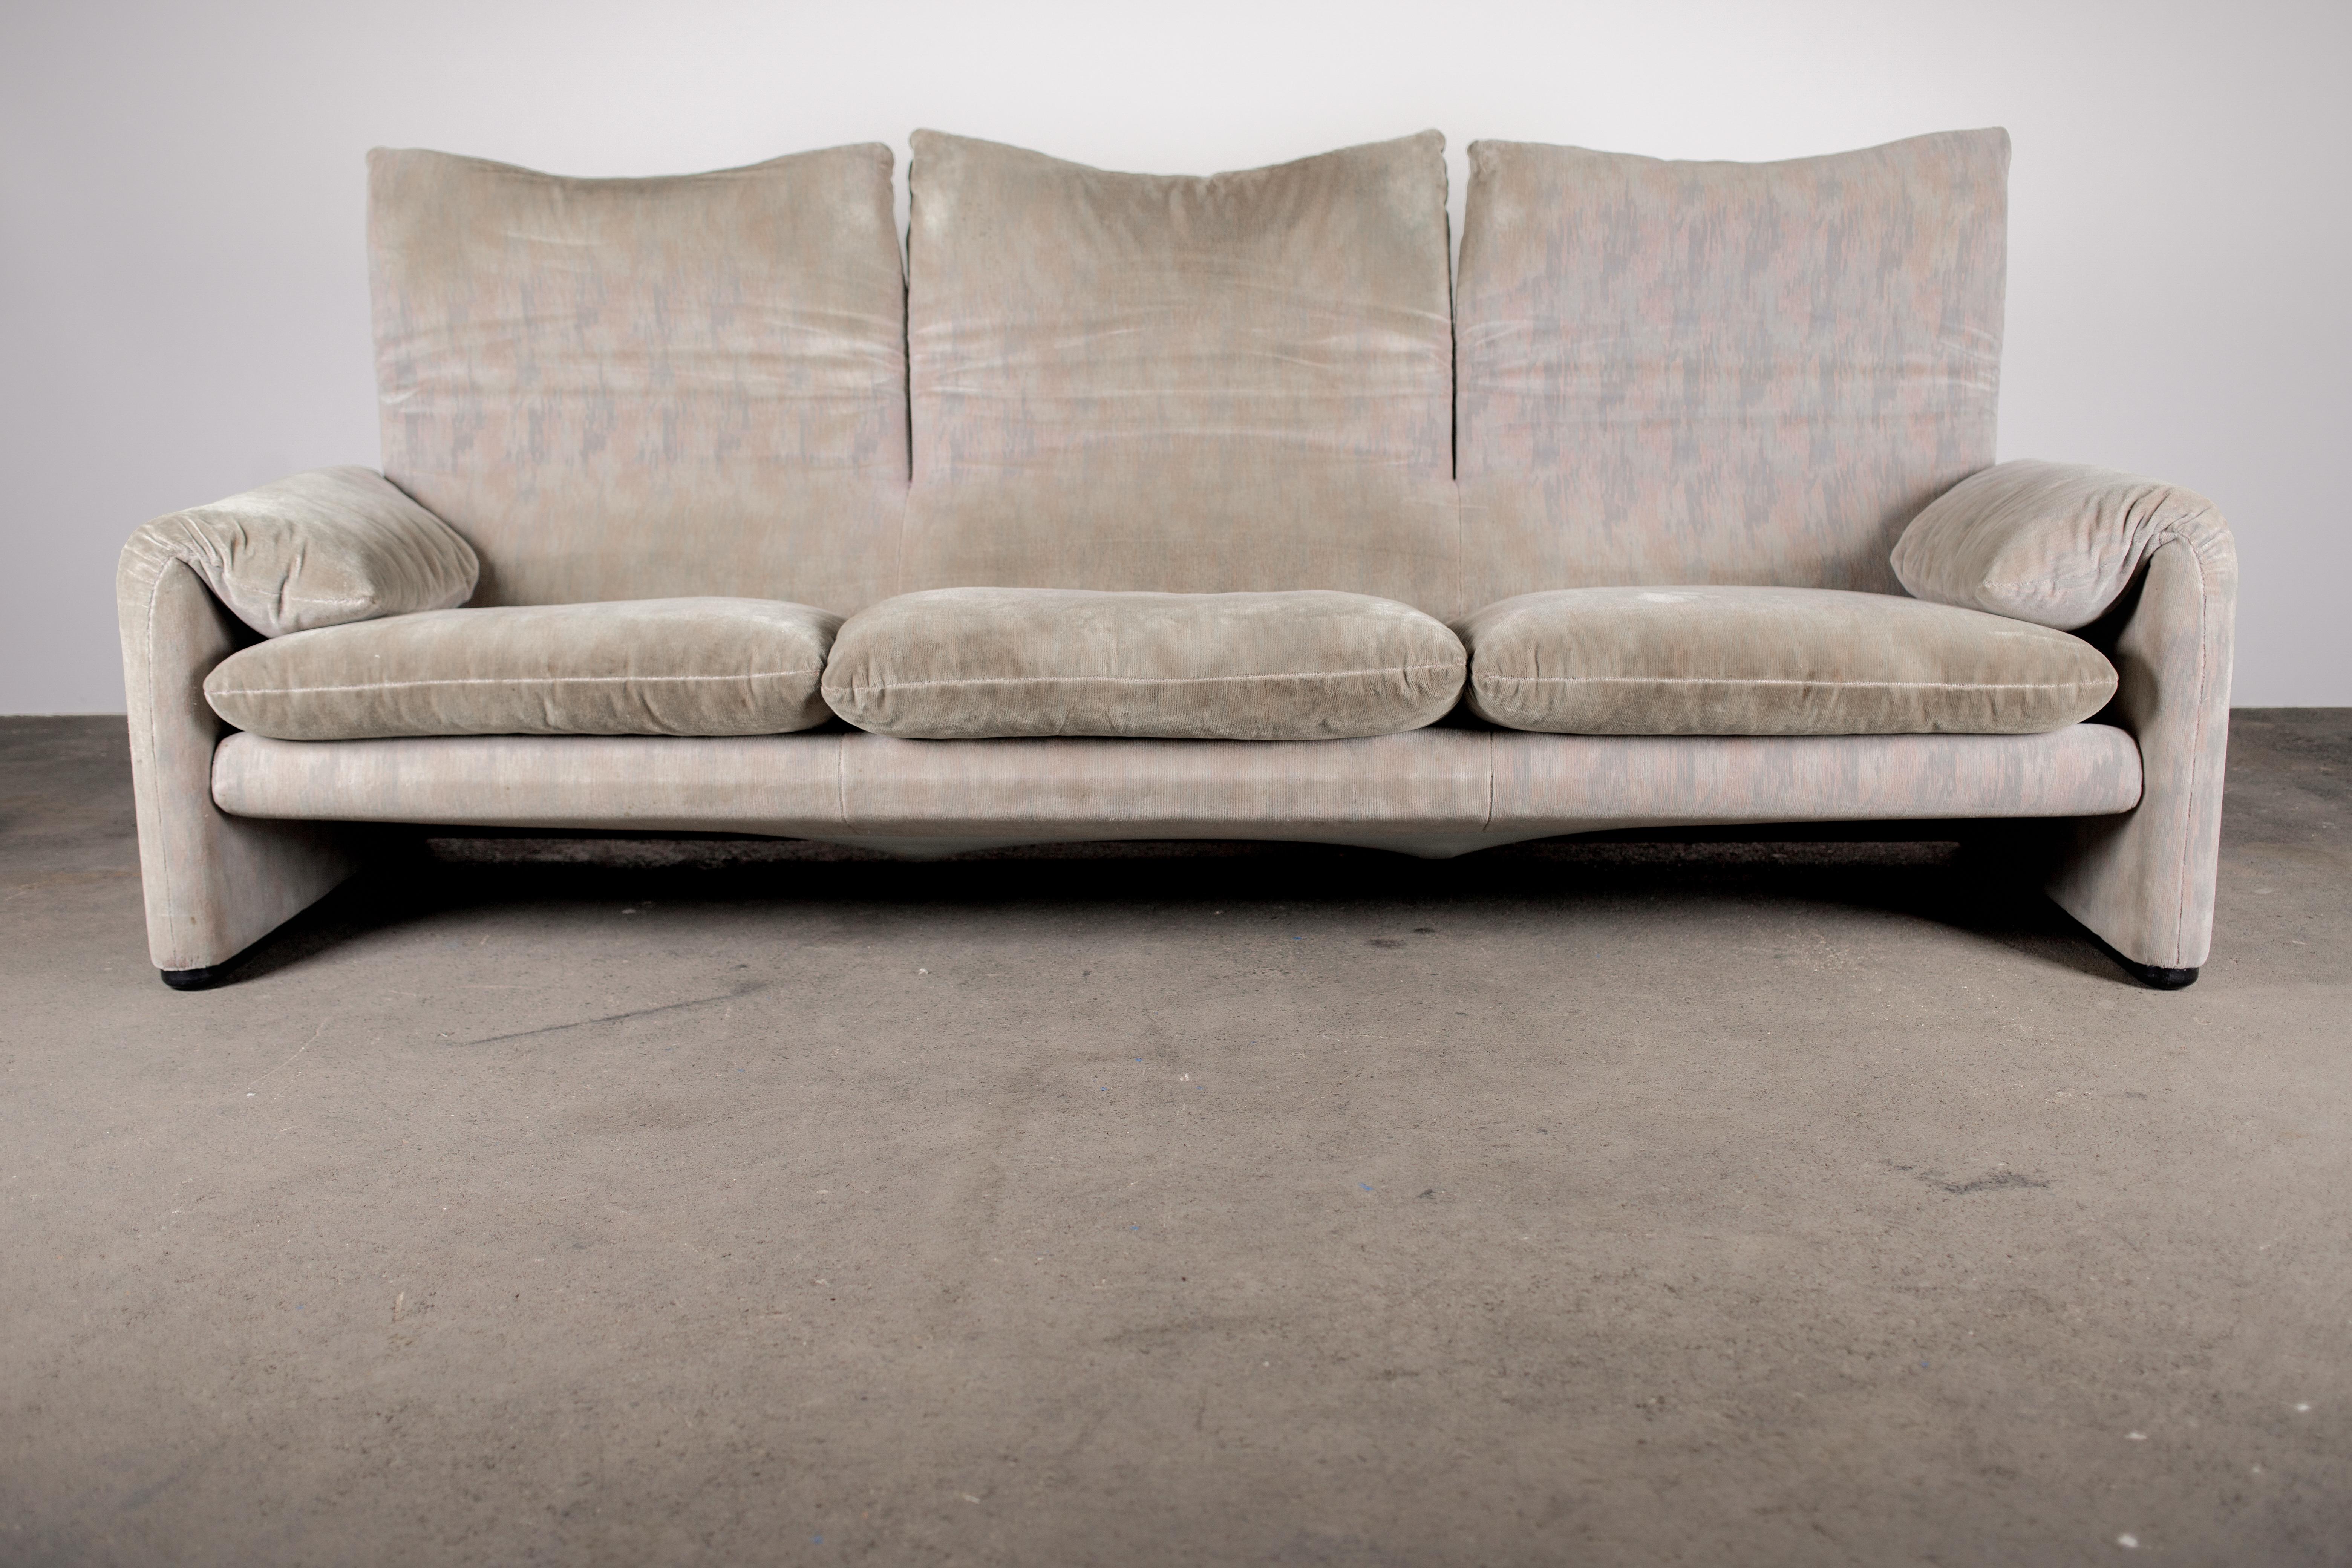 245 position sofa uses